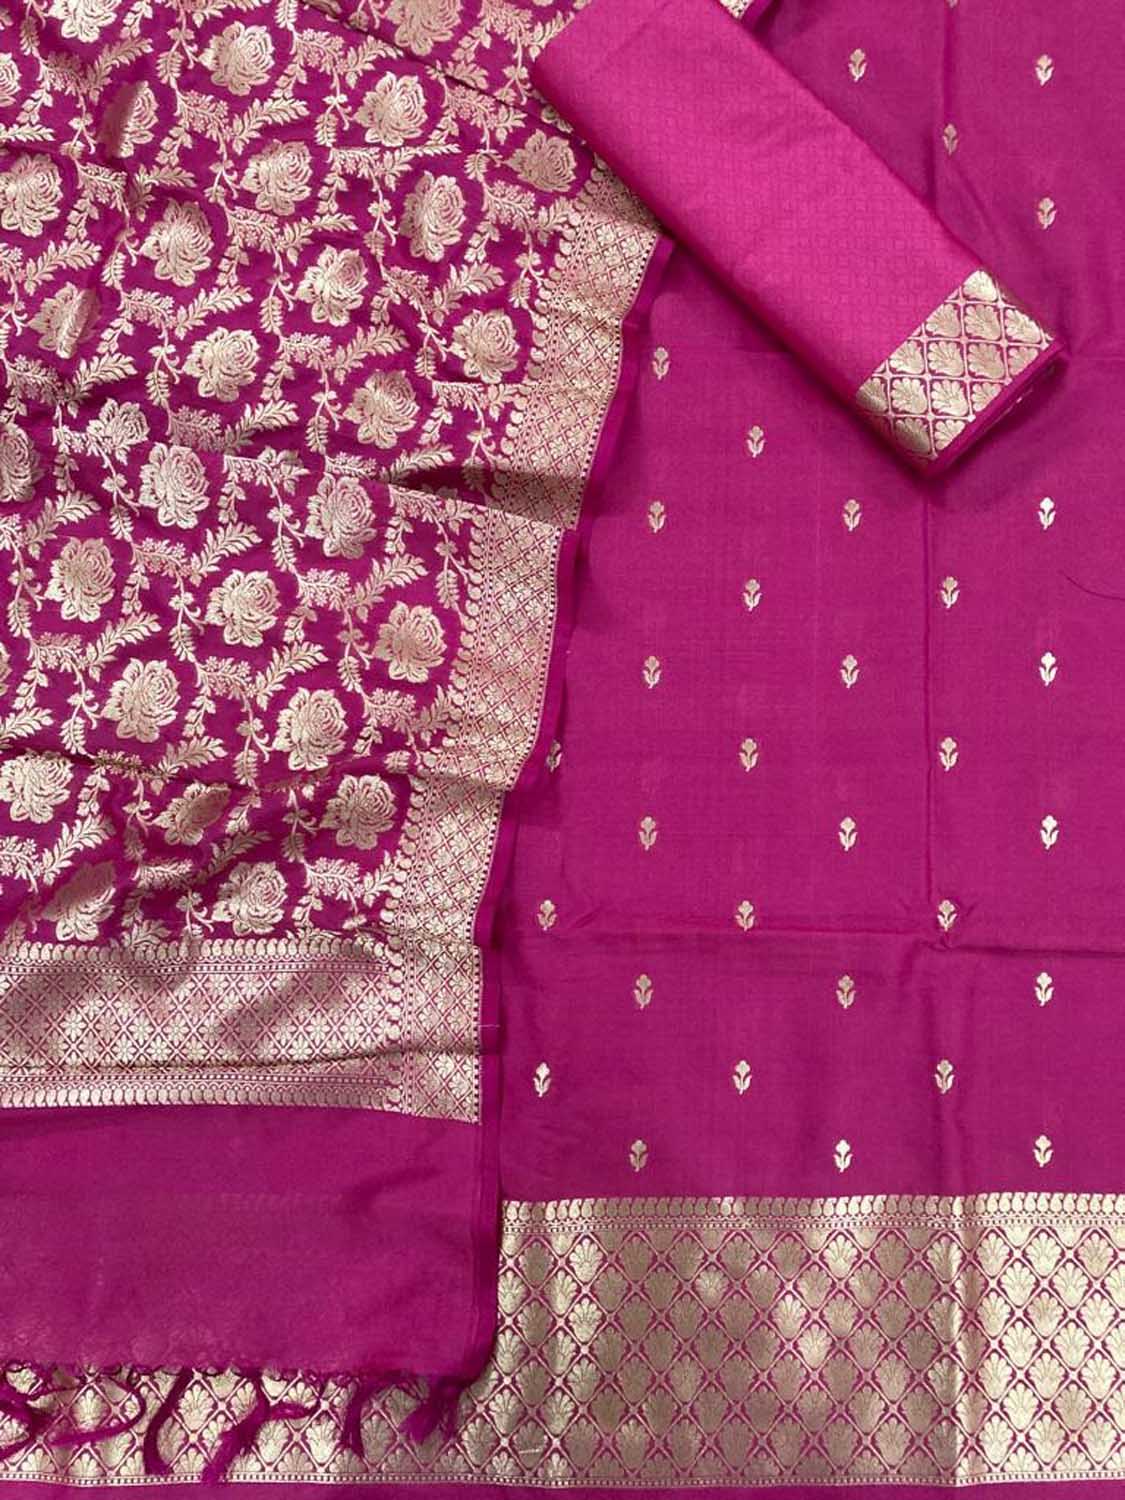 Stunning Pink Banarasi Silk Suit Set - Unstitched Three Piece for Elegant Look - Luxurion World